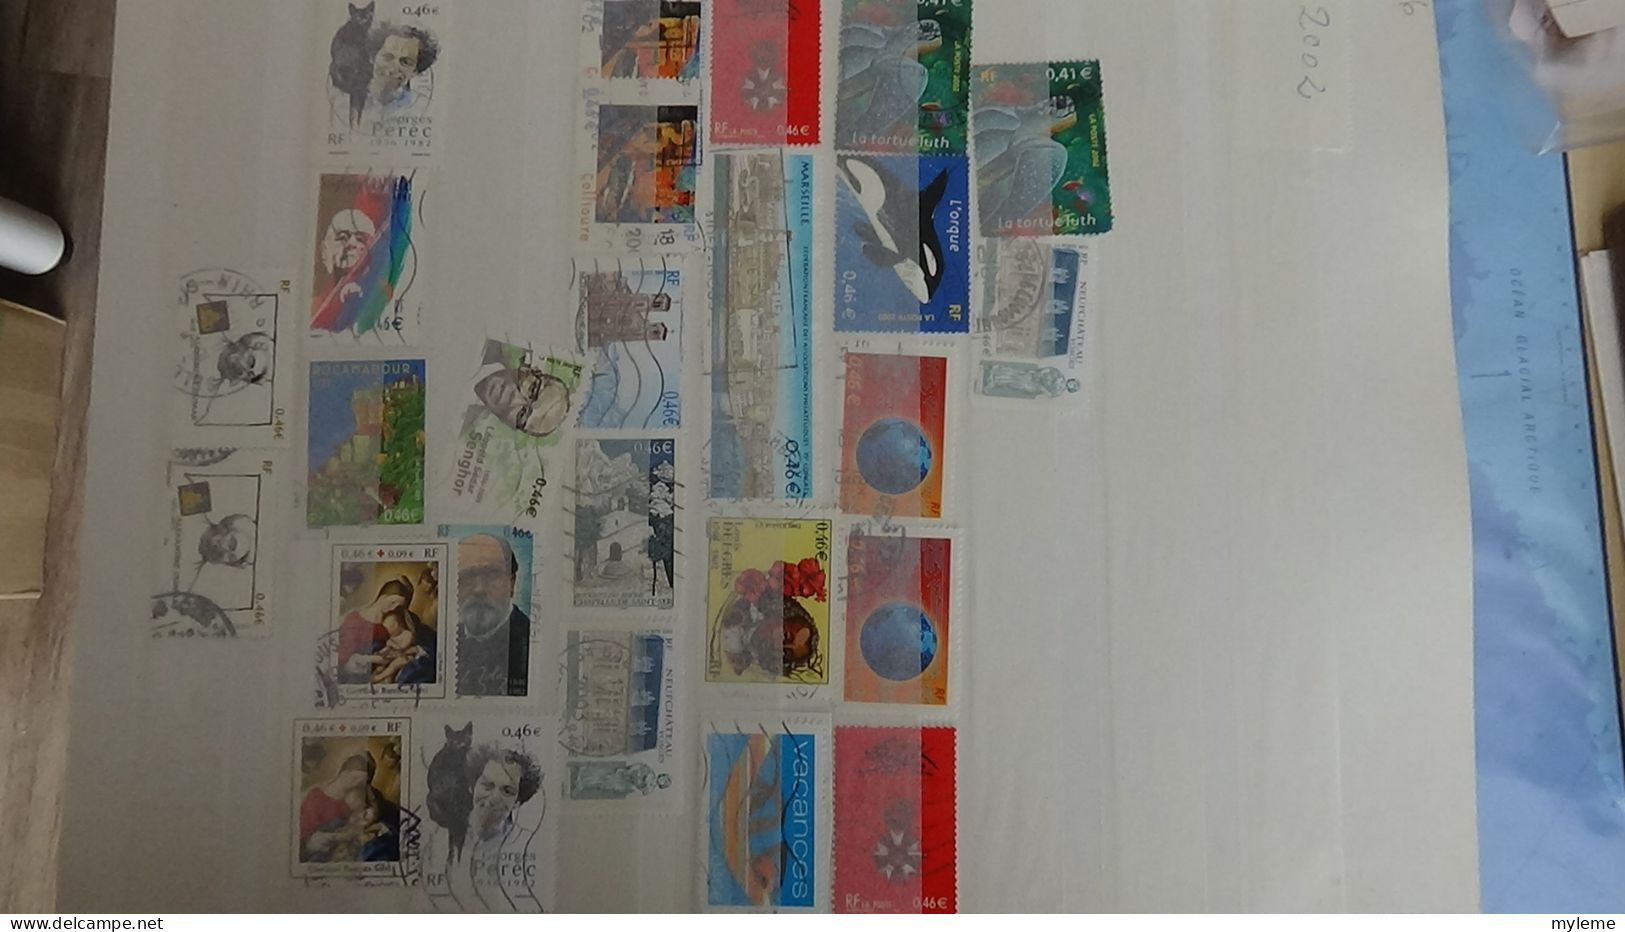 BJ38 Collection de timbres oblitérés de divers pays + France N° 3734i ** piquage à cheval en bloc de 4.  A saisir !!!